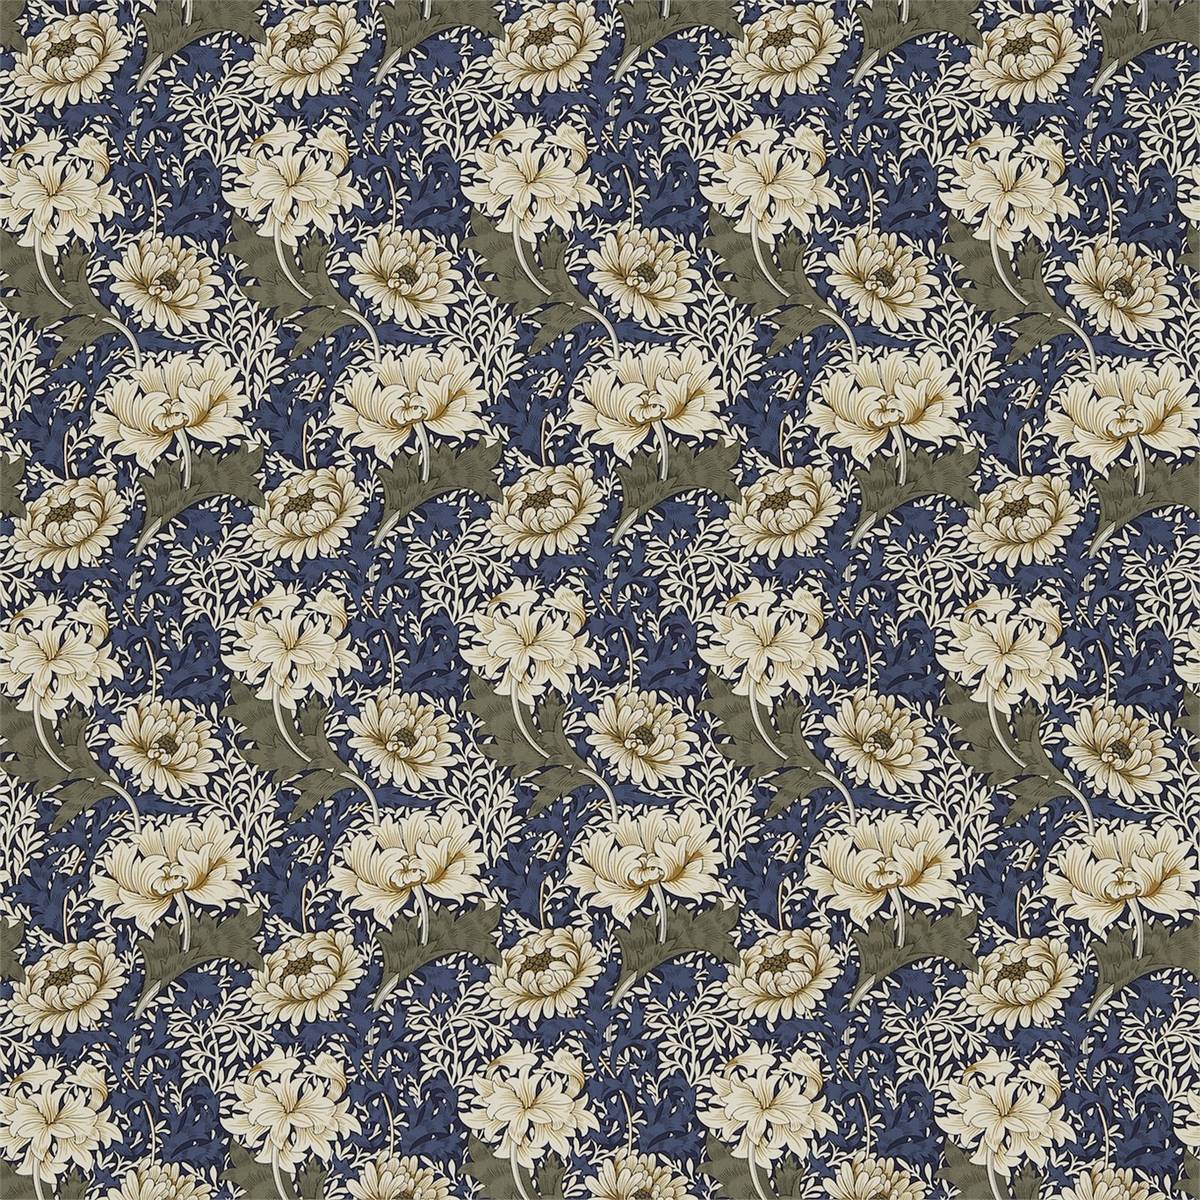 Chrysanthemum Indigo/Cream Fabric by William Morris & Co.